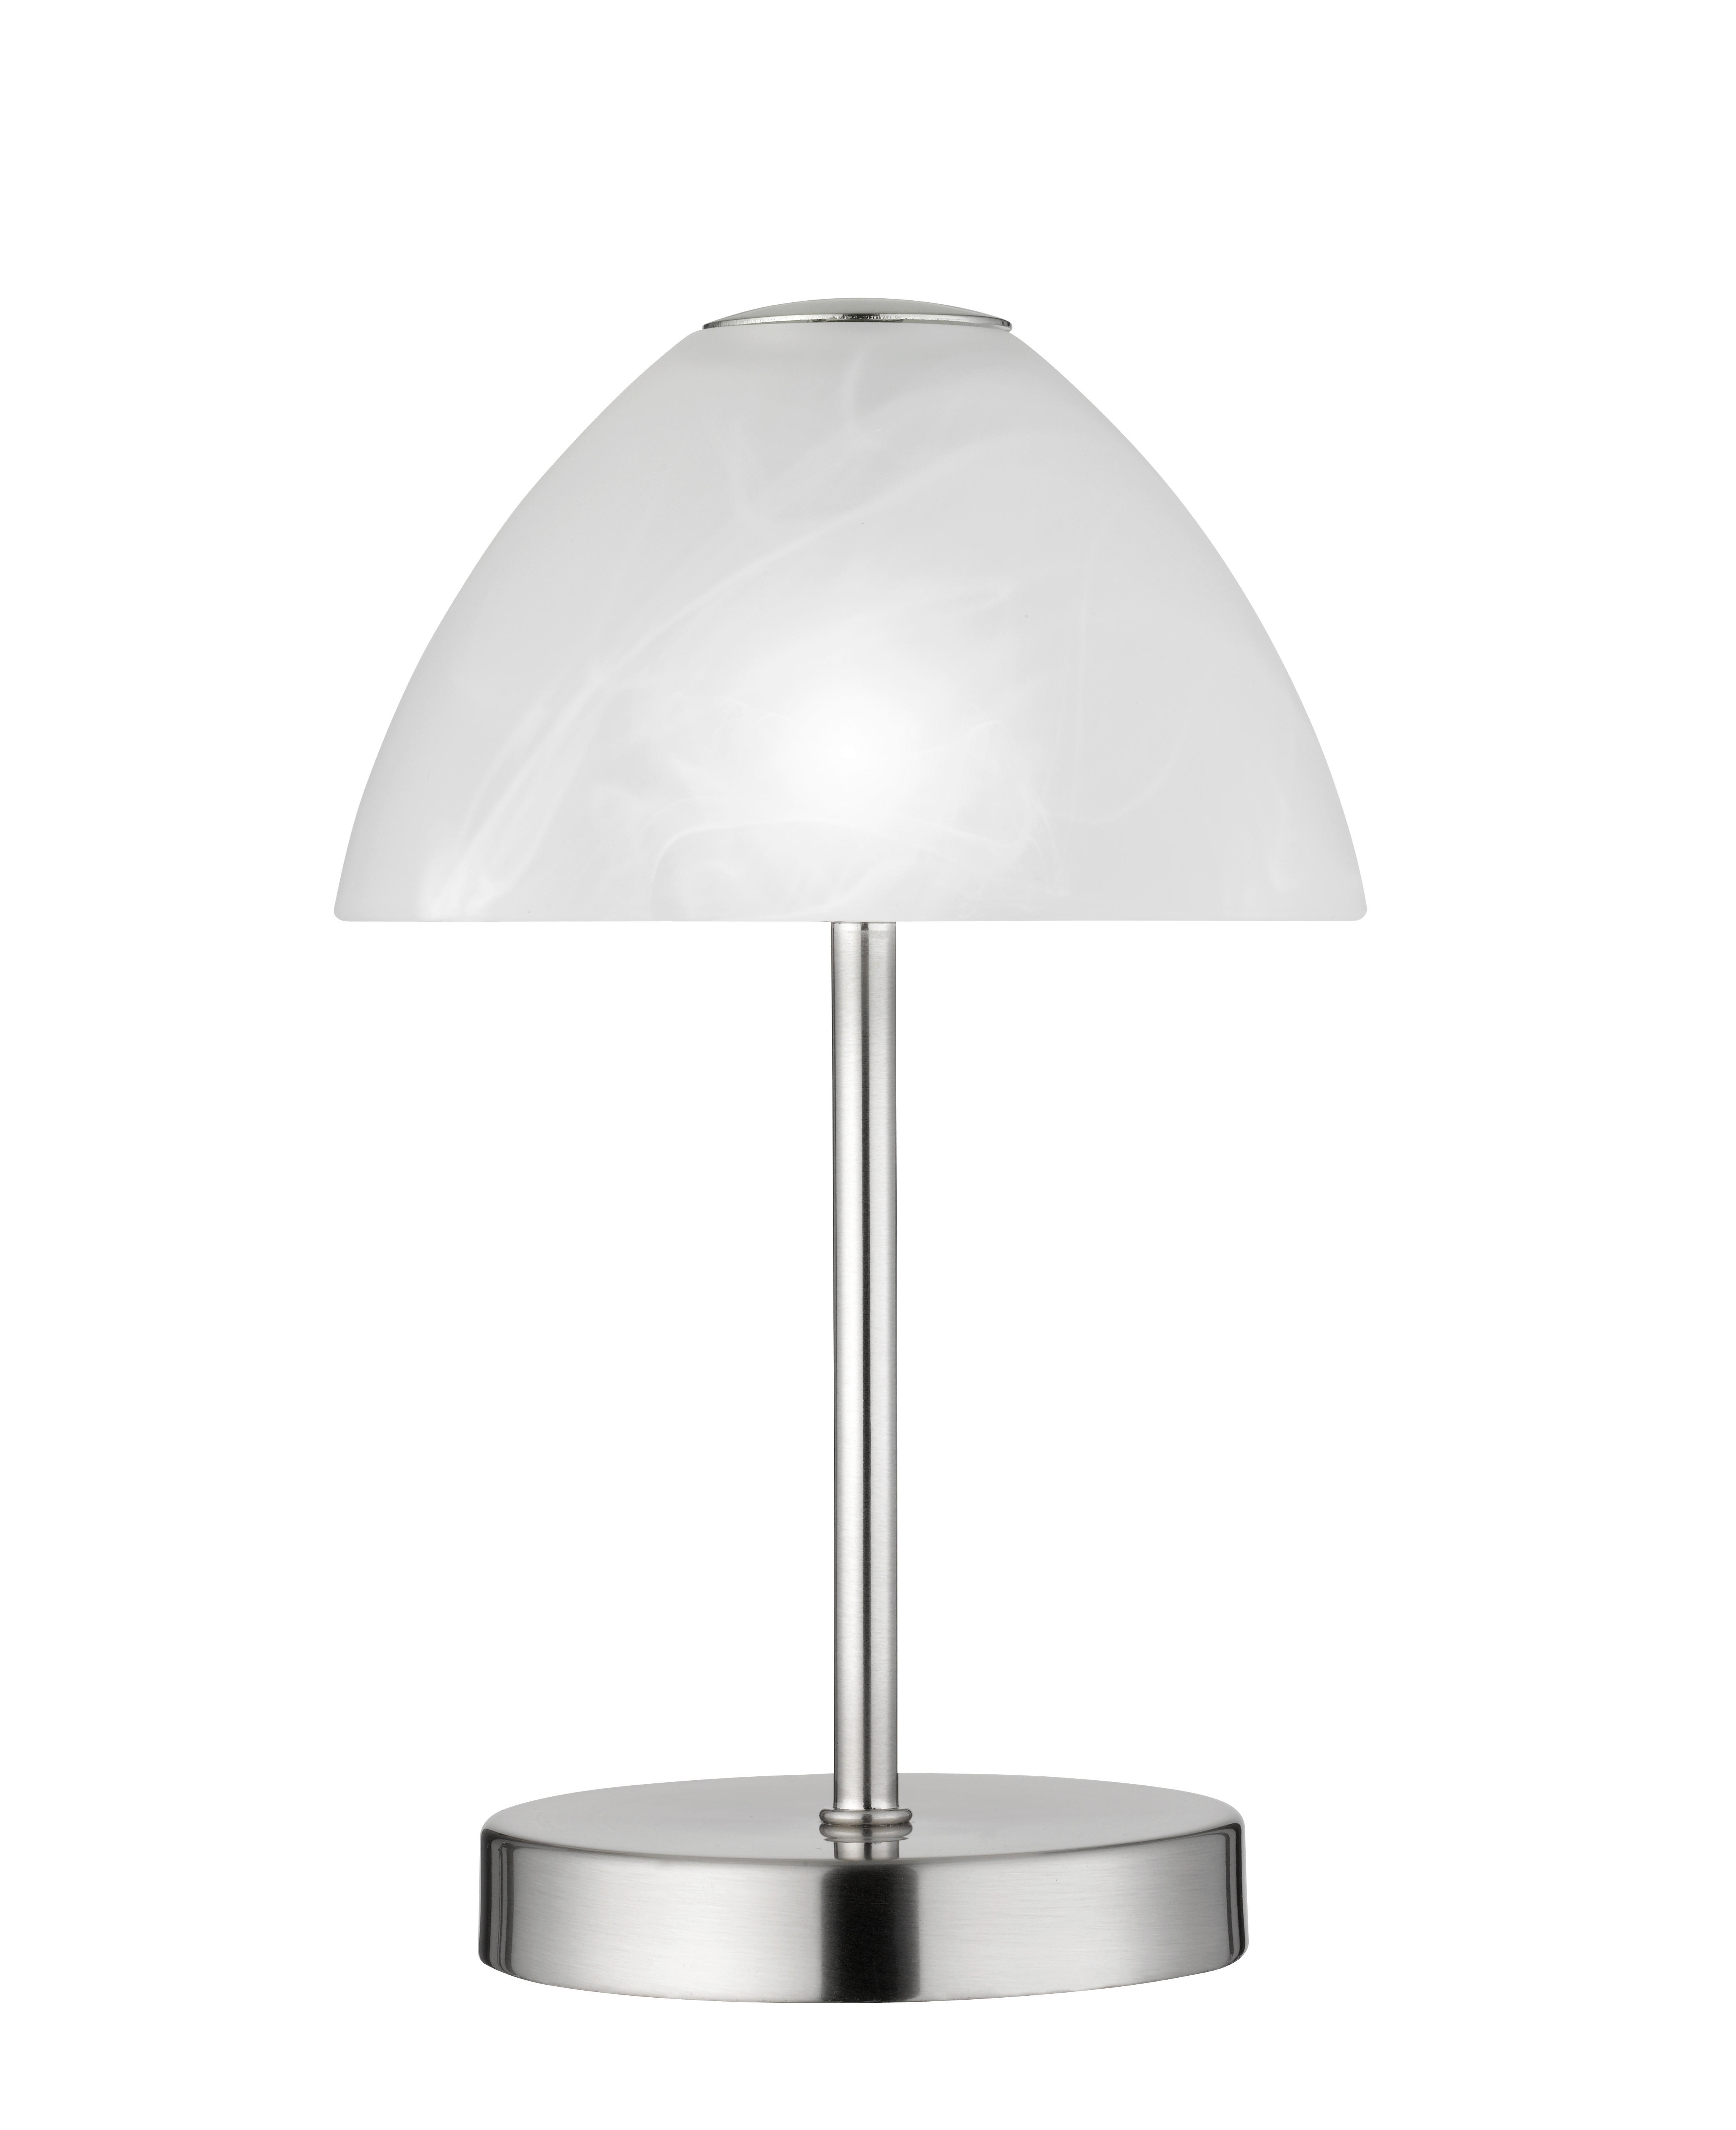 LED-TISCHLEUCHTE 15/24 cm   - Silberfarben/Weiß, Basics, Glas/Metall (15/24cm) - Boxxx